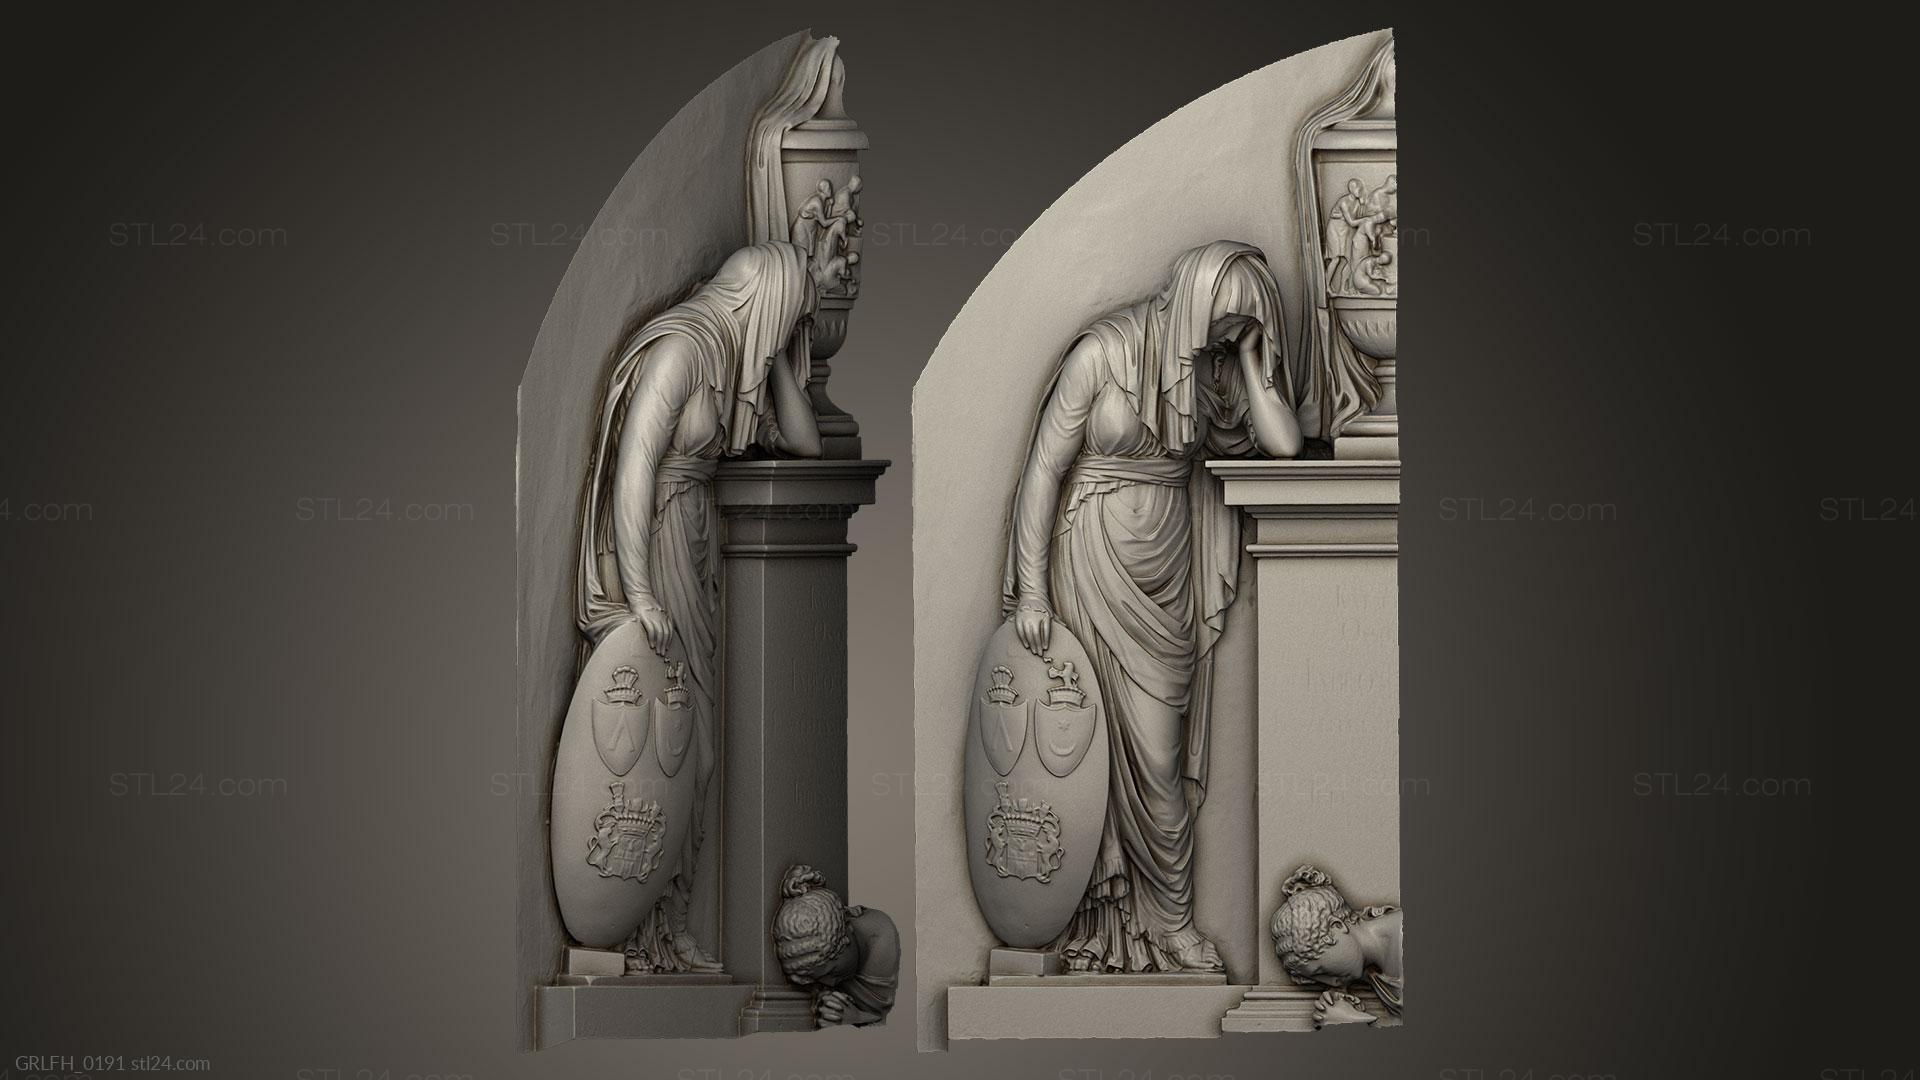 Горельефы и барельефы исторические и религиозные (Плачущая женщина № 1, GRLFH_0191) 3D модель для ЧПУ станка